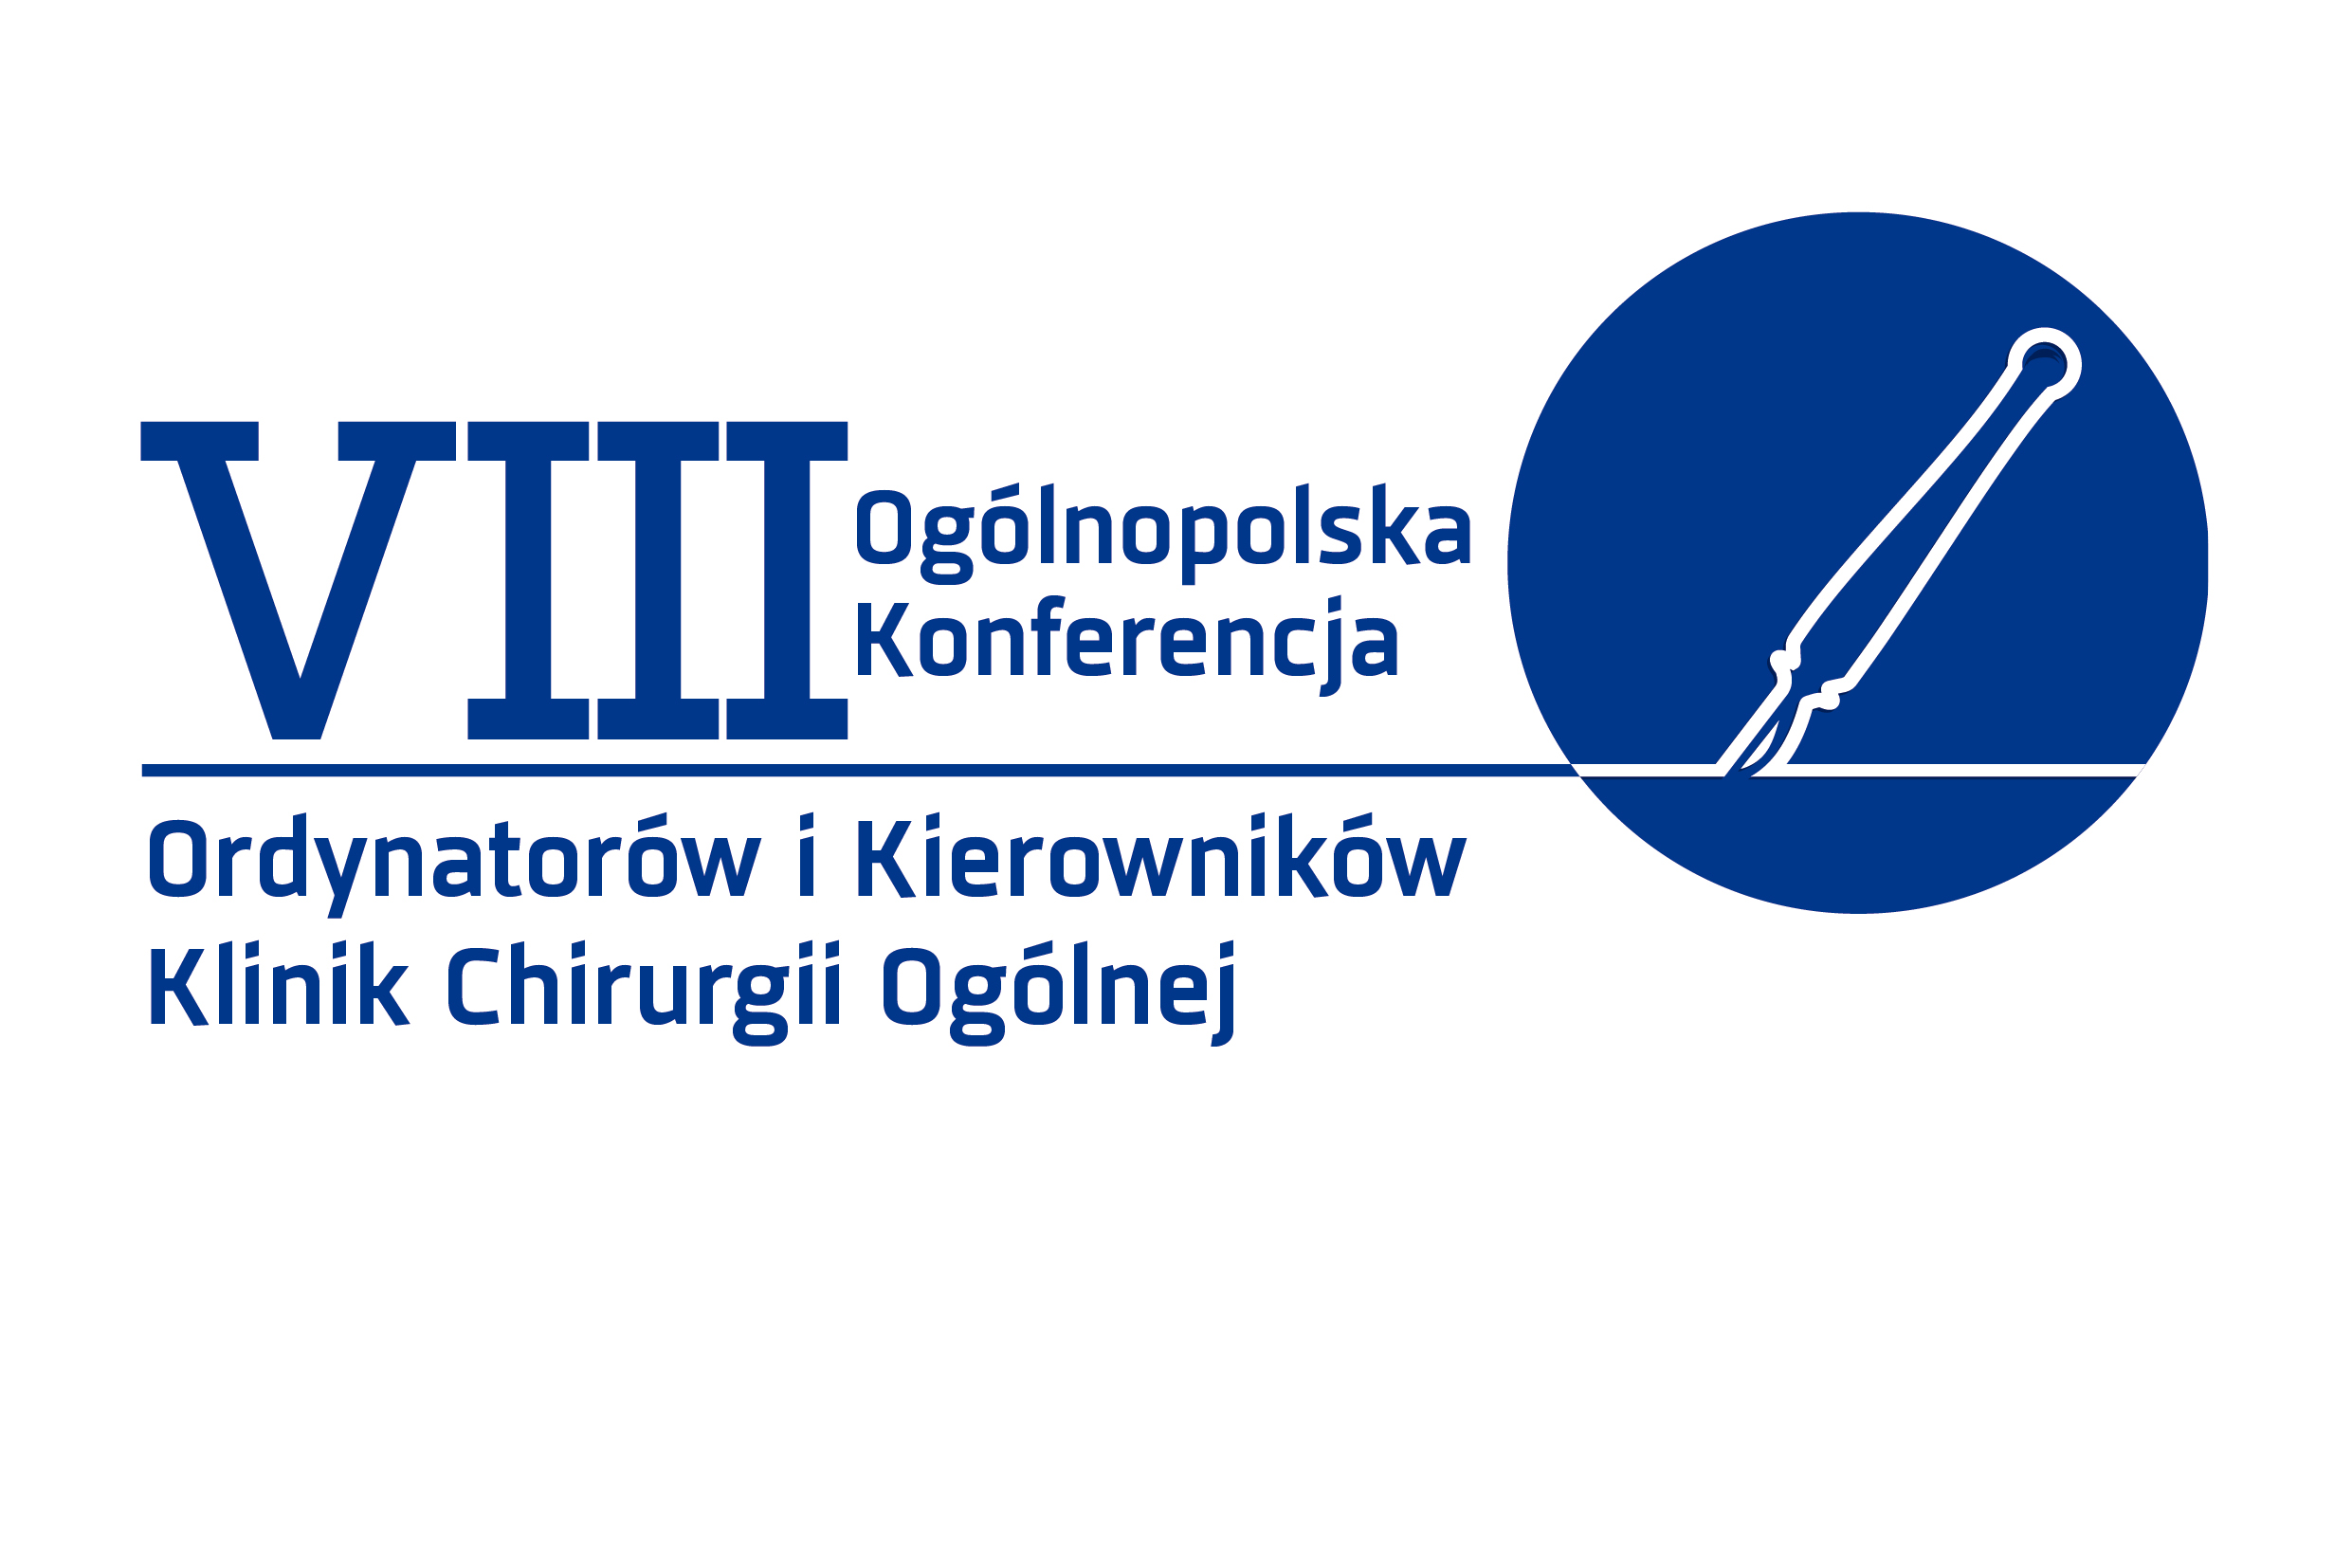 VIII Ogólnopolska Konferencja Ordynatorów i Kierowników Klinik Chirurgii Ogólnej 